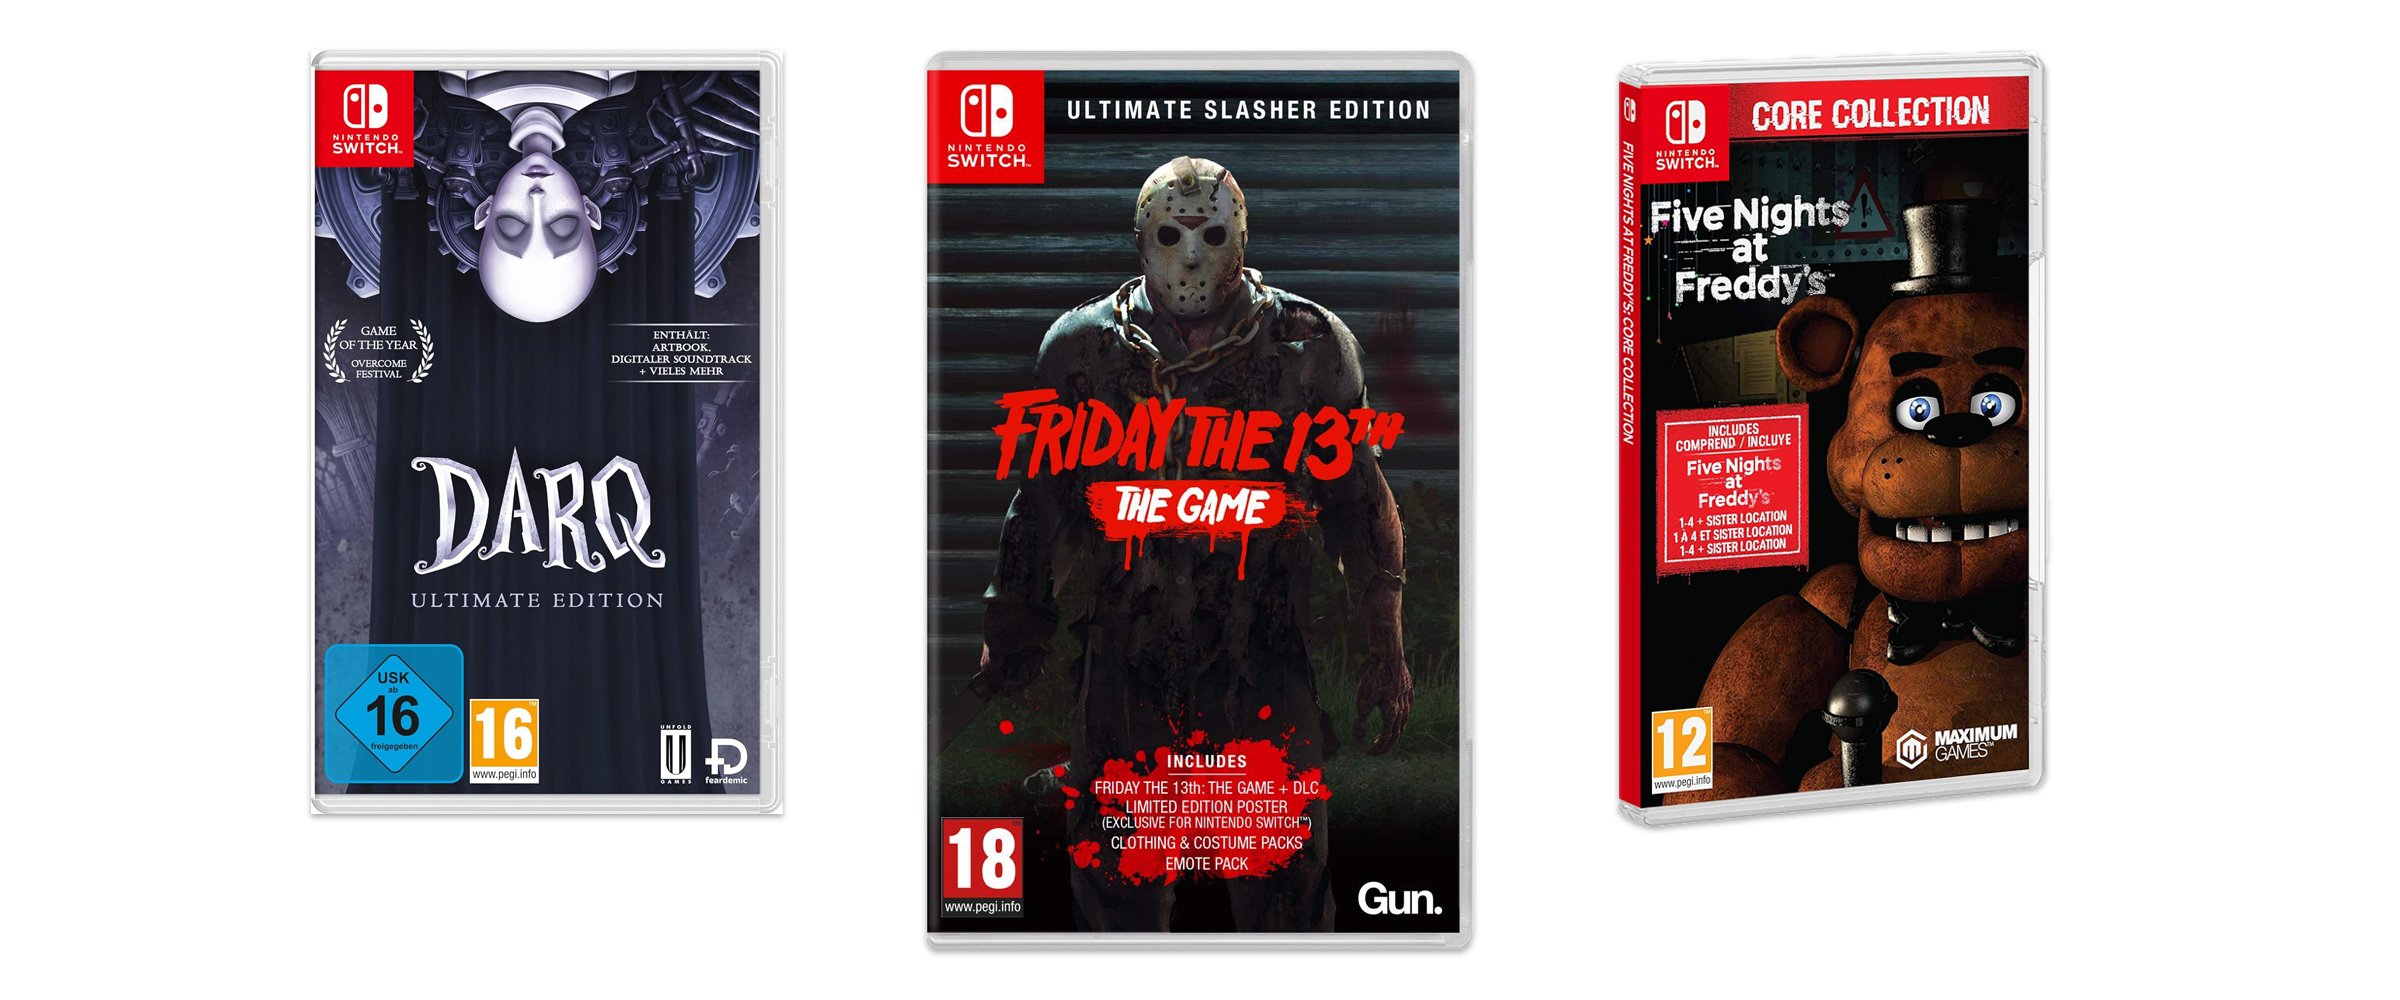 Drei tolle Horrorspiele für Nintendo Switch vor weißem Hintergrund. Zu sehen sind Darq, Friday The 13th und Five Nights at Freddy's.